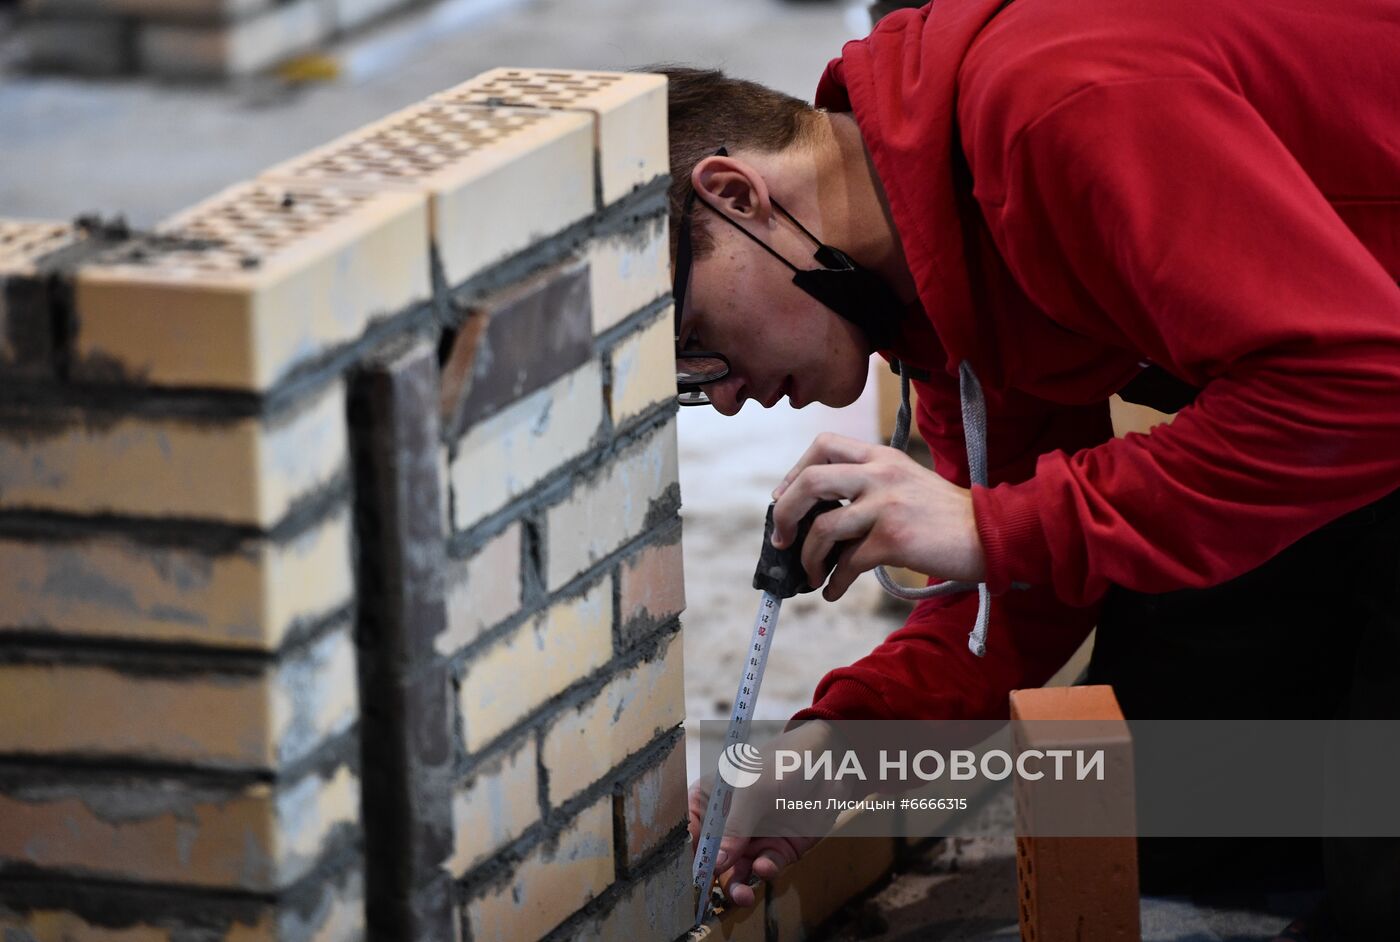 Чемпионат в сфере градостроительства и урбанистики Urban Skills в Екатеринбурге